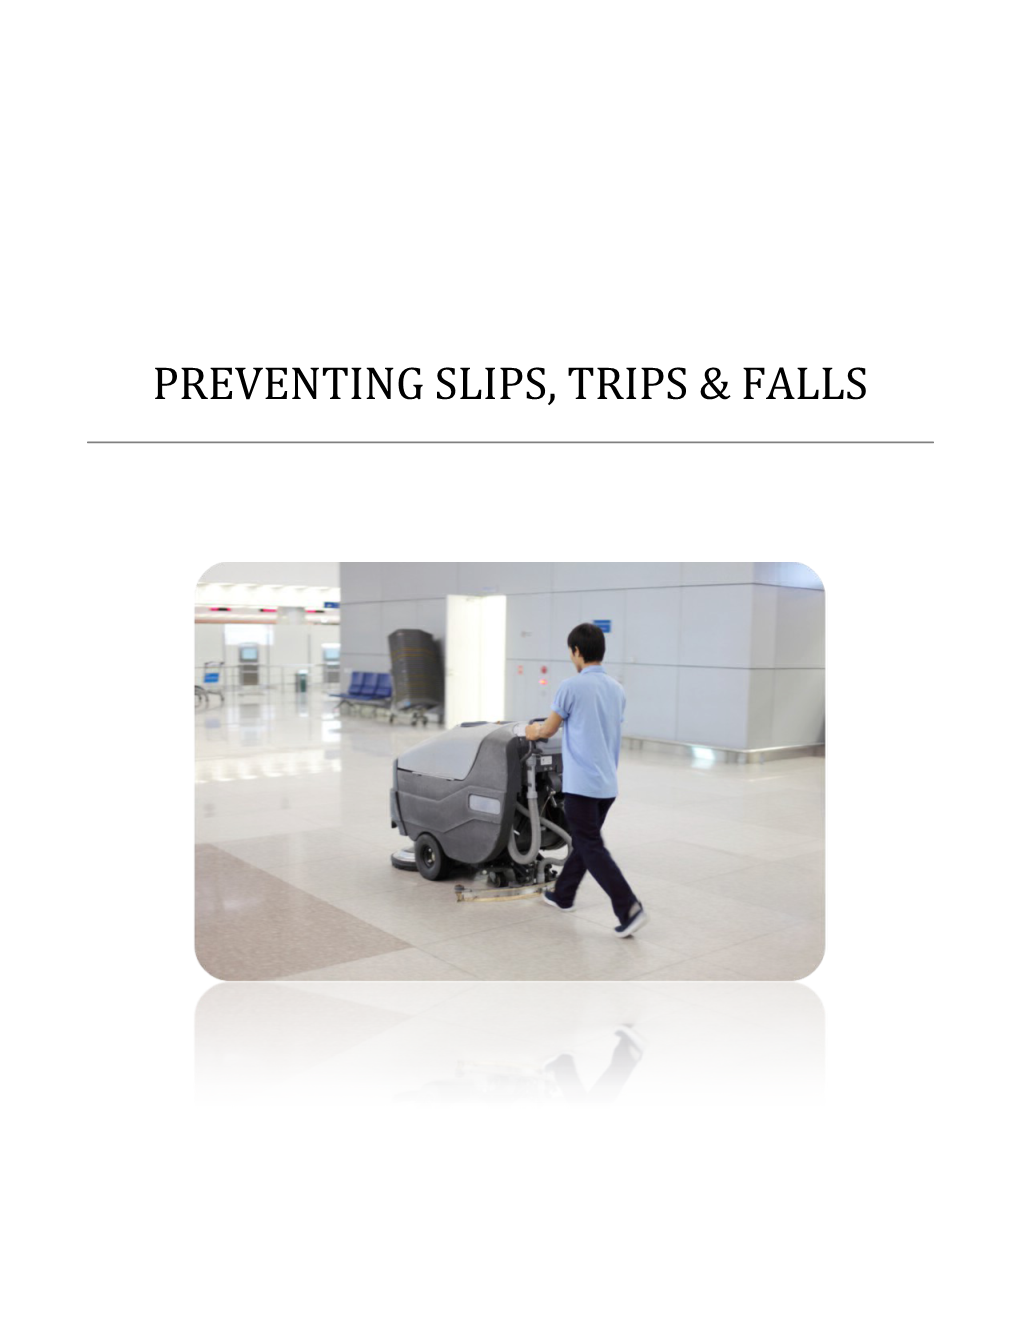 Preventing Slips, Trips & Falls